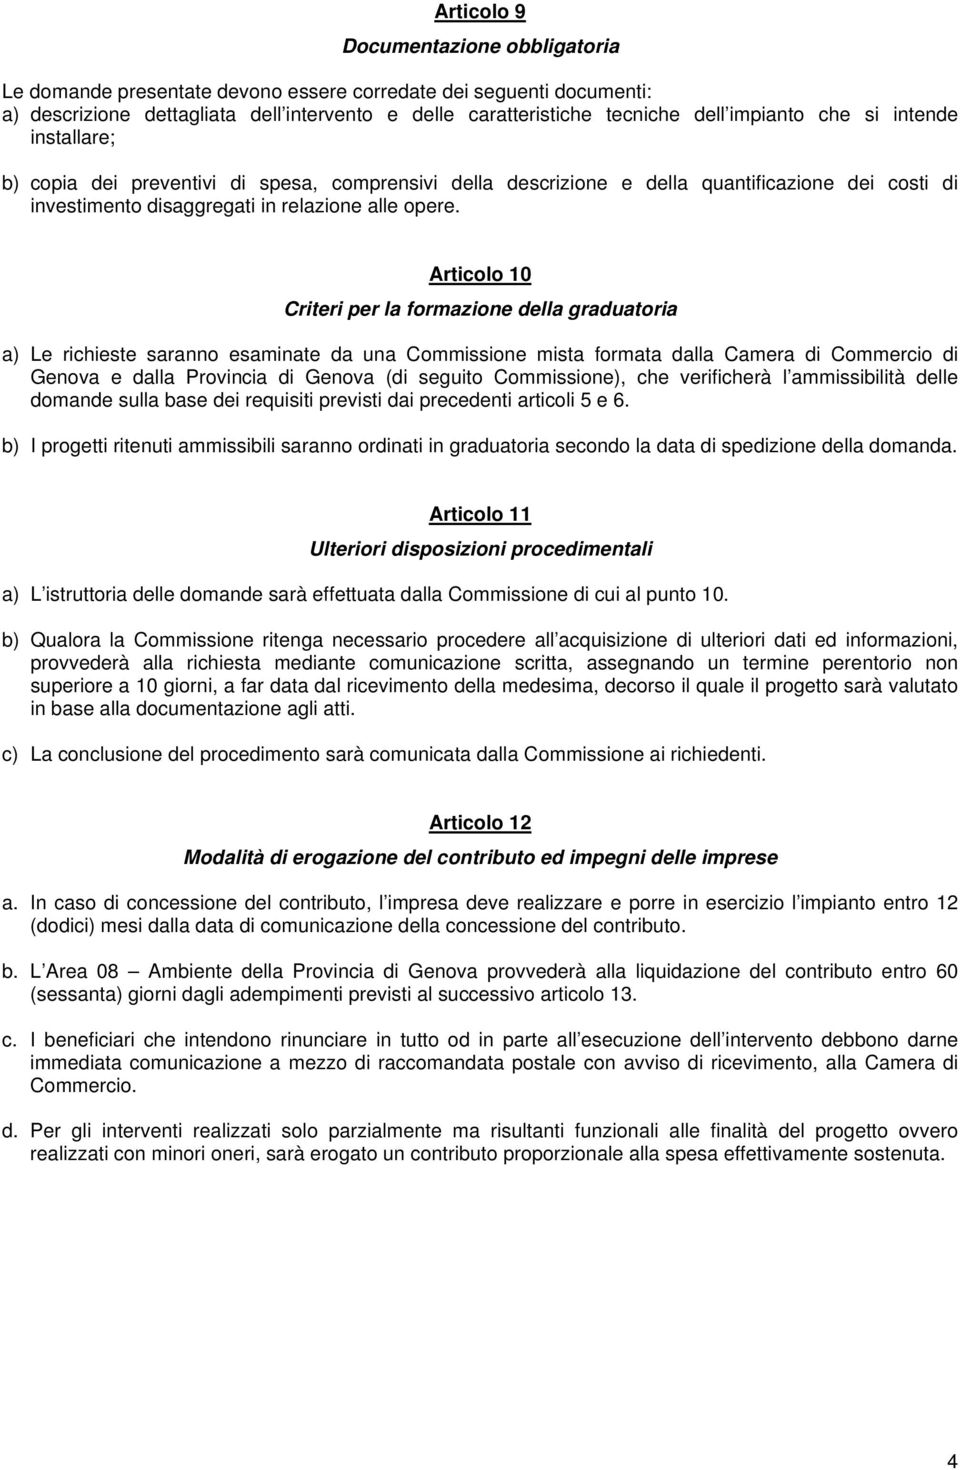 Articolo 10 Criteri per la formazione della graduatoria a) Le richieste saranno esaminate da una Commissione mista formata dalla Camera di Commercio di Genova e dalla Provincia di Genova (di seguito